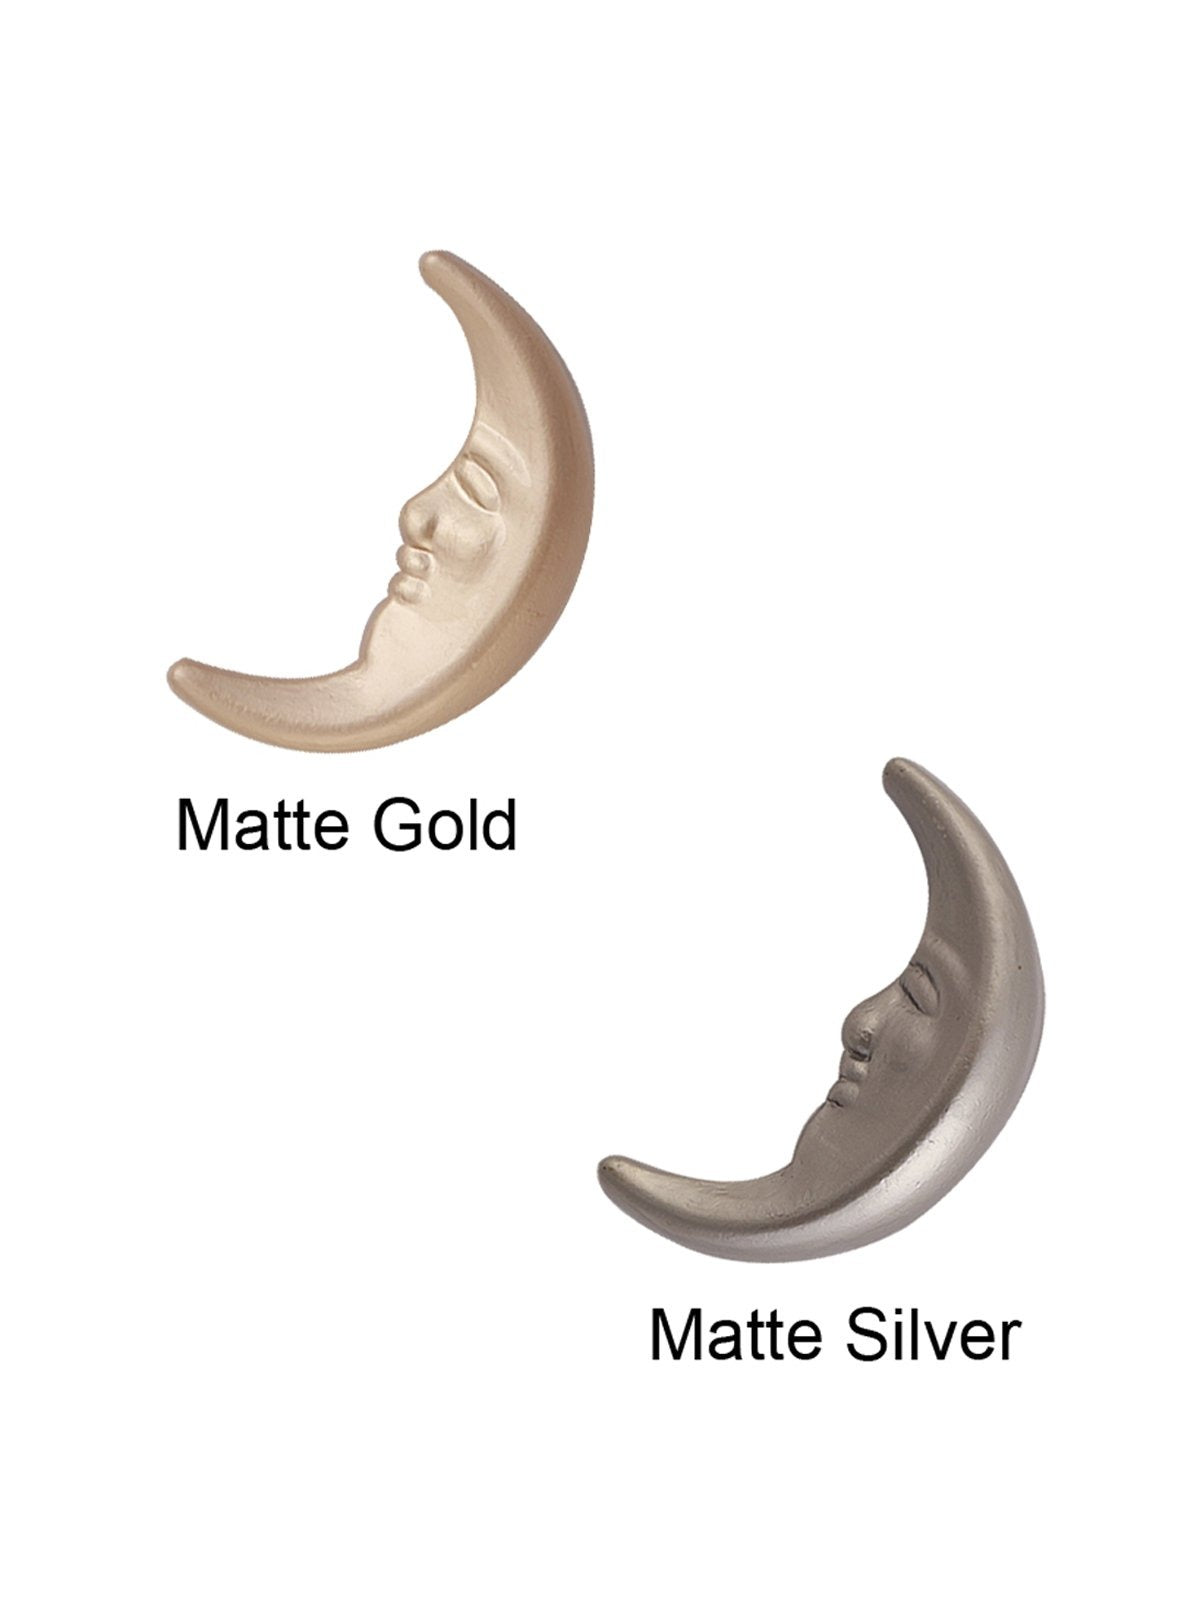 Unique Crescent Moon Shape Matte Gold/Silver Colour Finish Shank Button